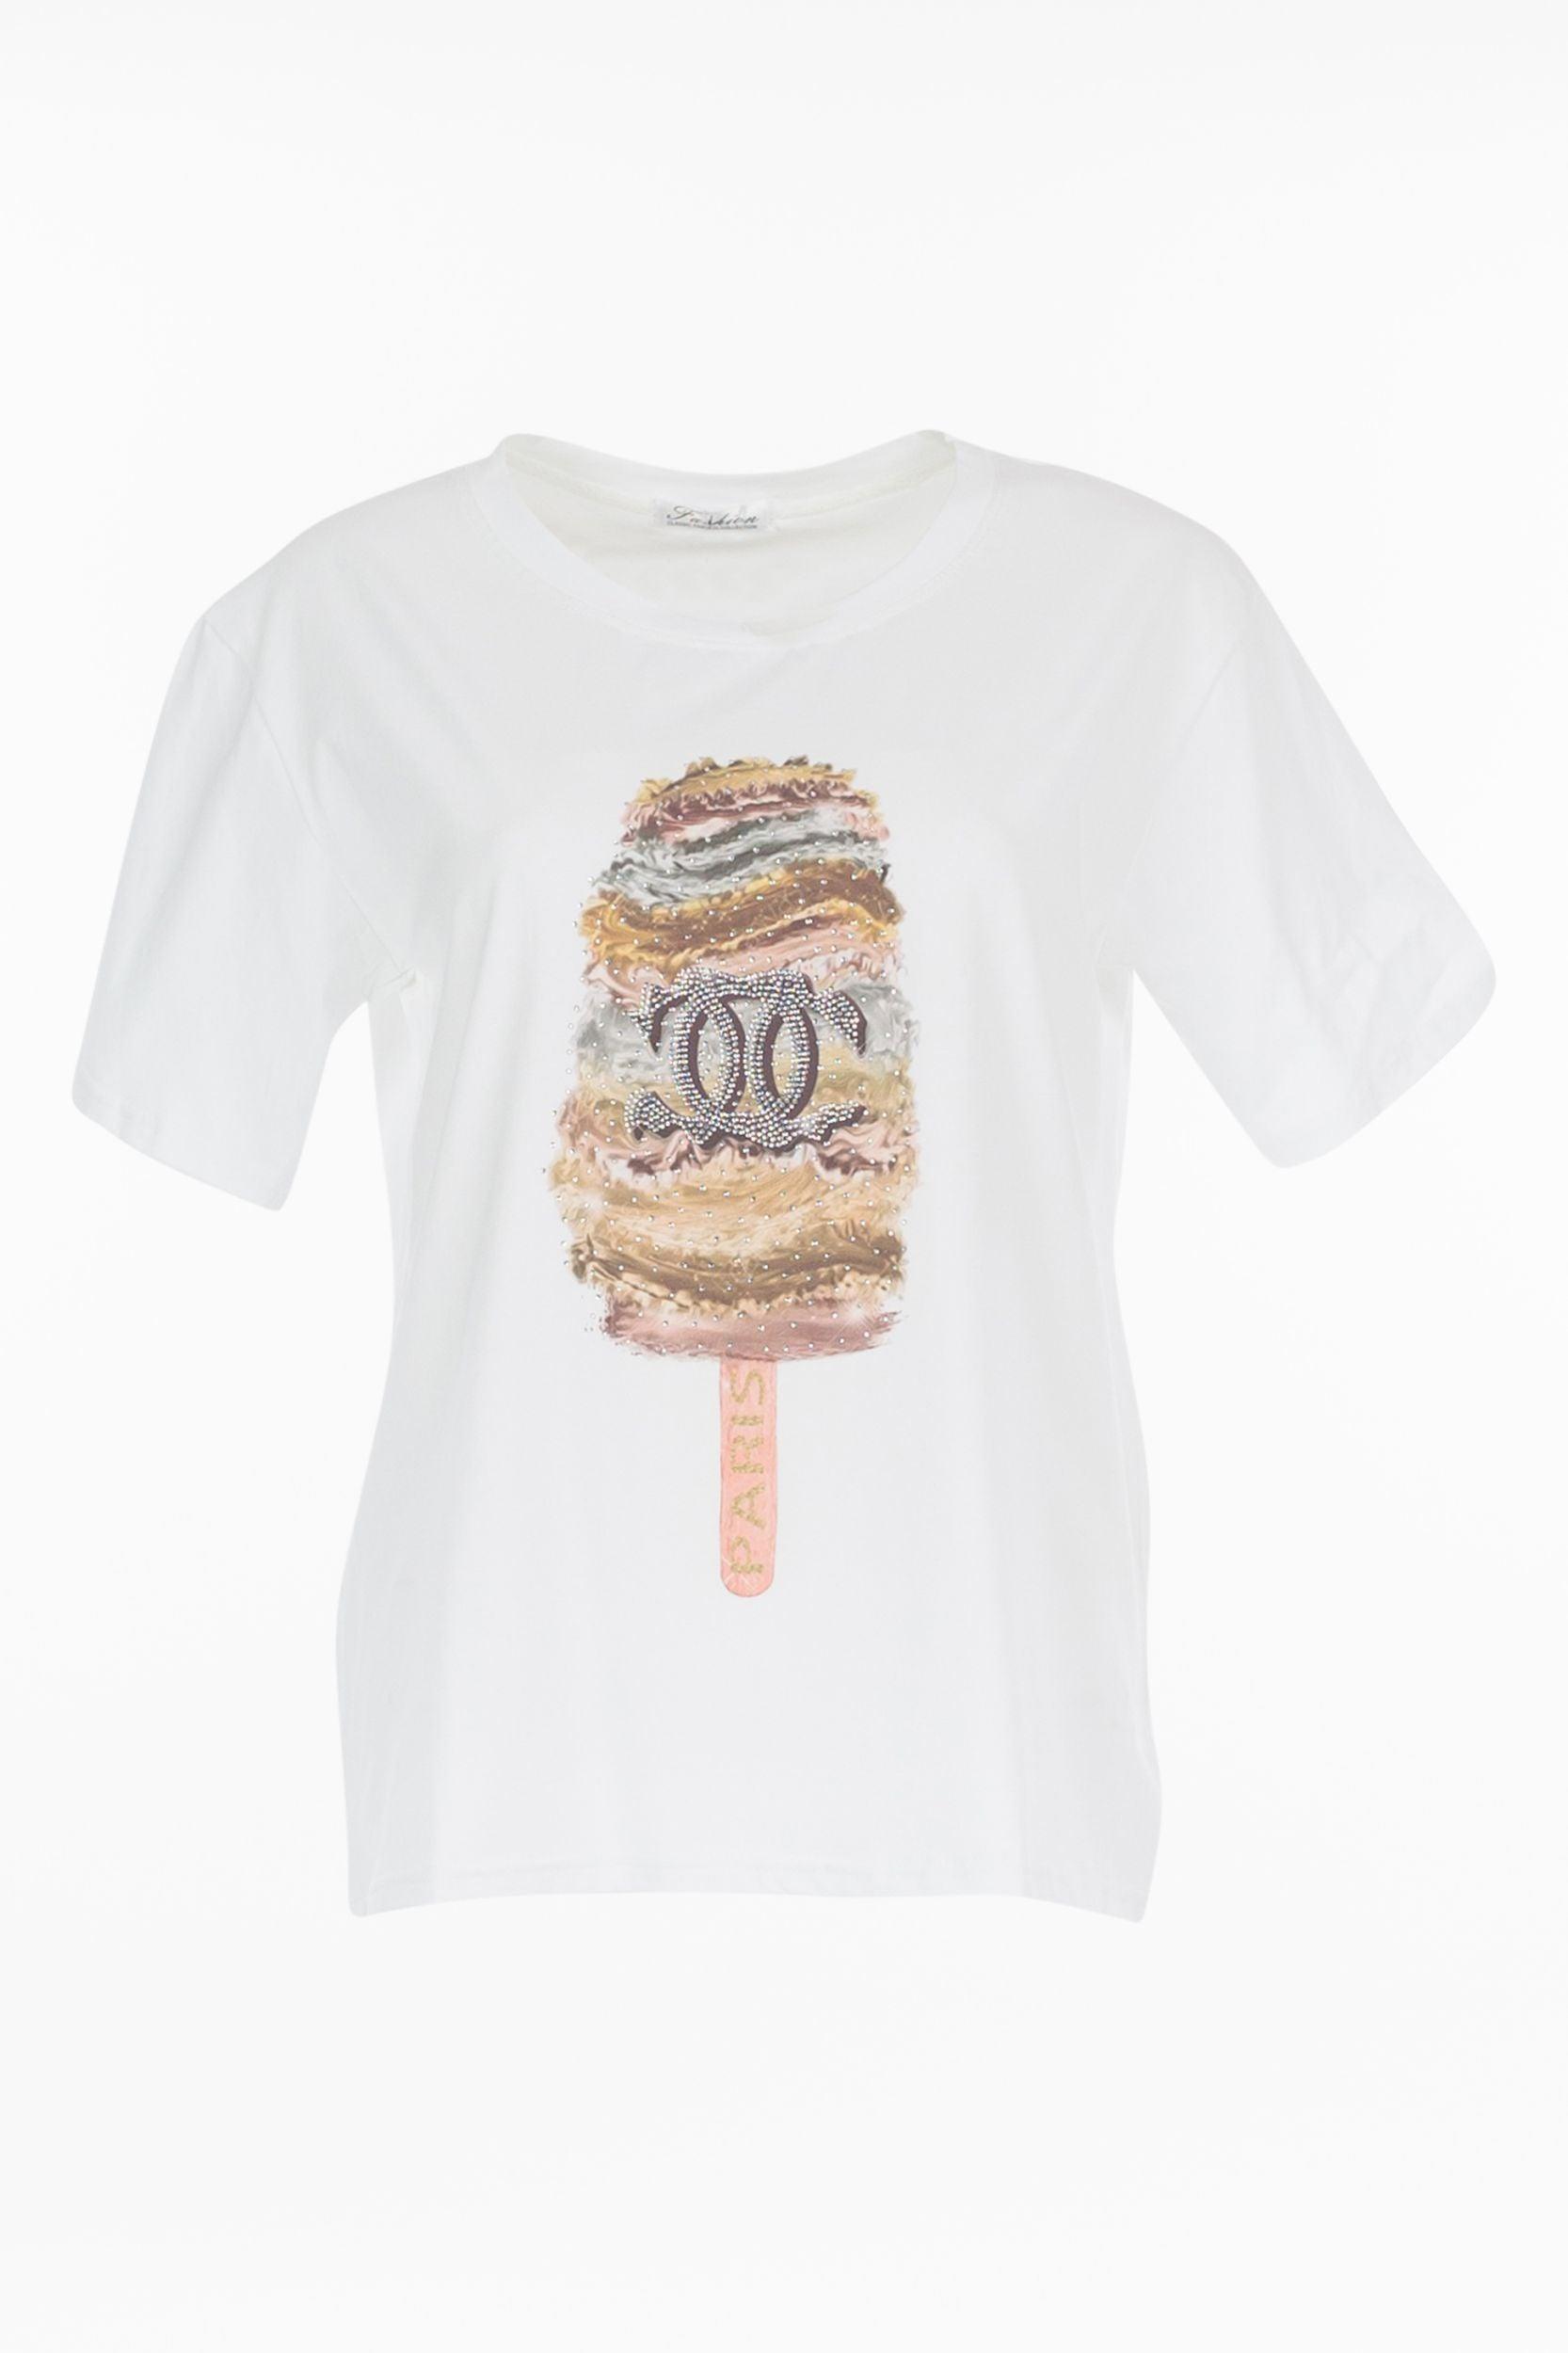 T-Shirt "Eis" - La Strada